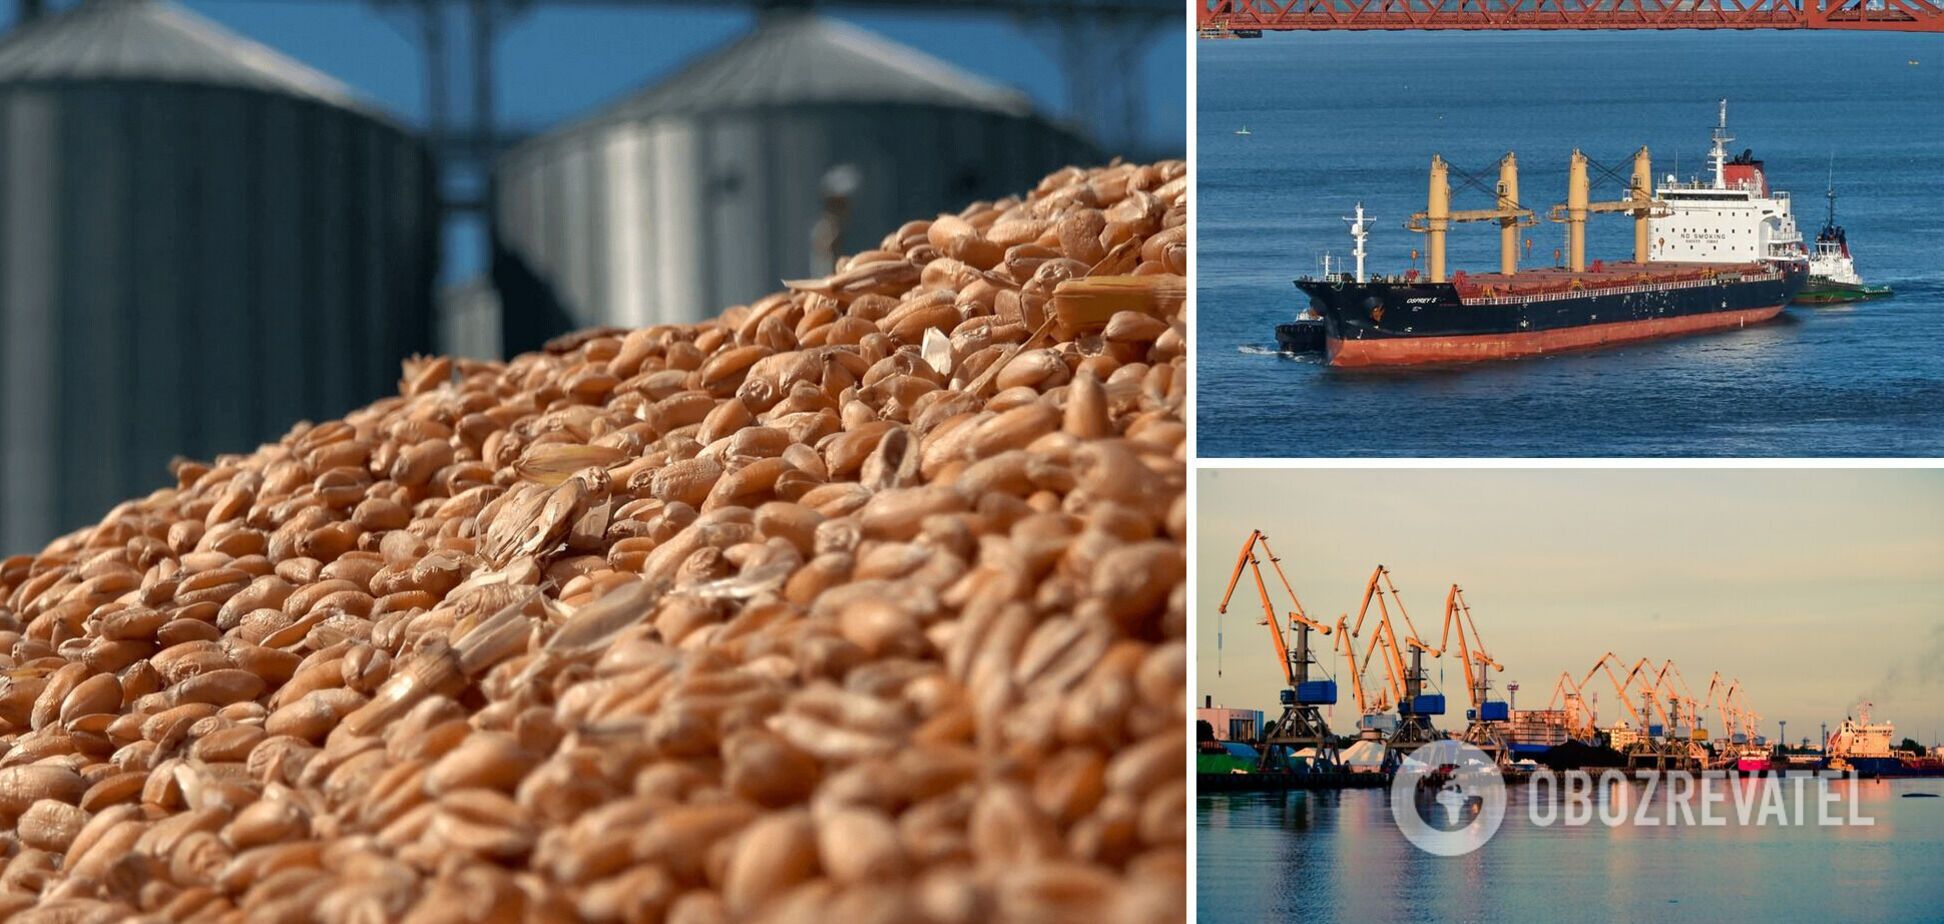 Разблокировка портов для экспорта зерна – это прецедент, следующим шагом должен стать экспорт металла и химии, – экономист